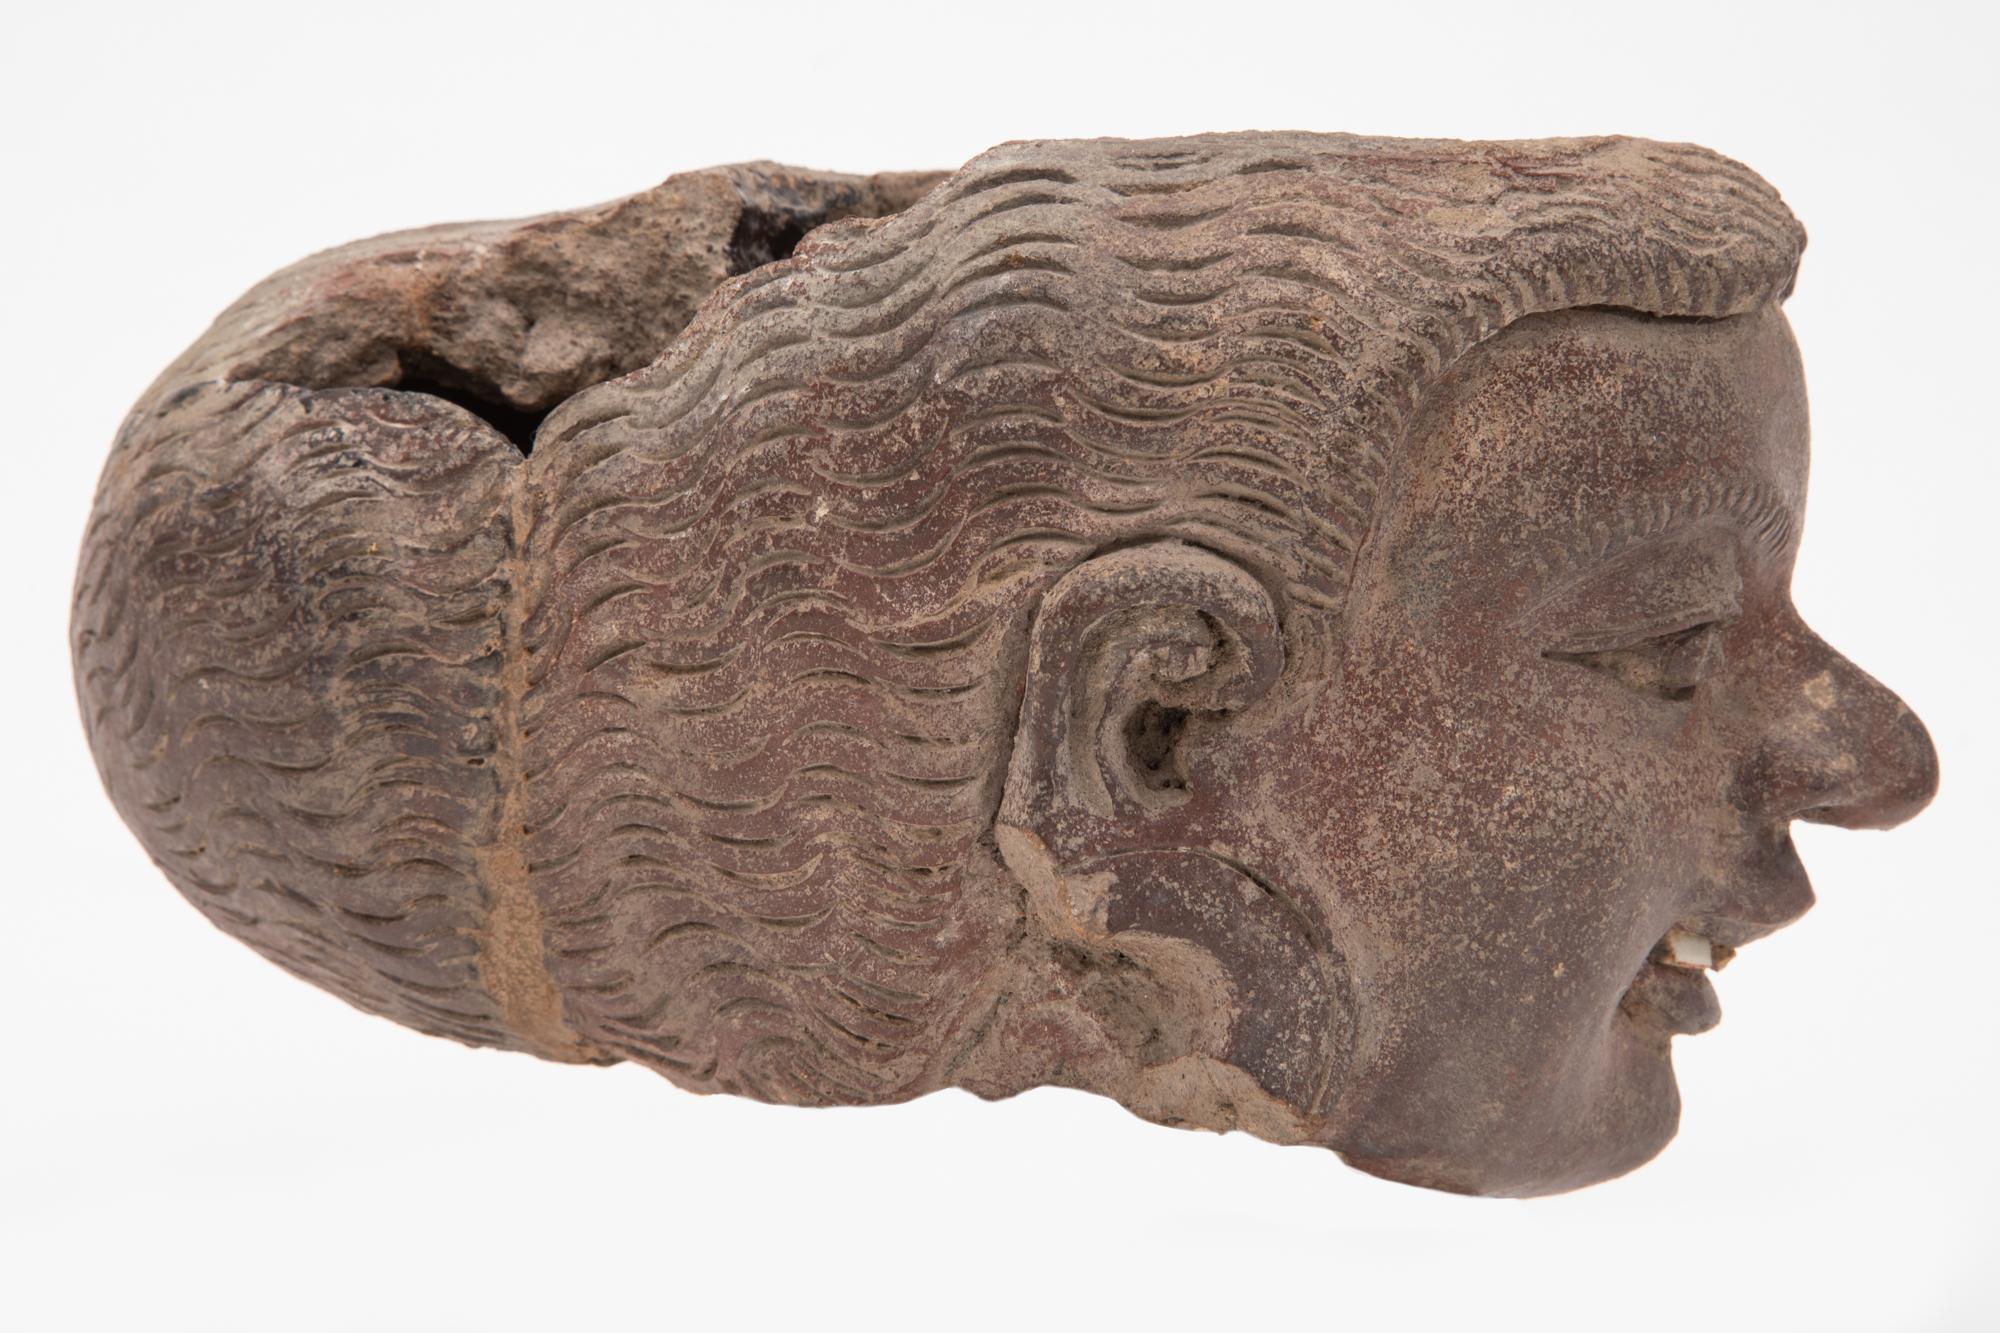 Une céramique de construction figurative probablement un collecteur d'eau simplement modelé, cette tête est très expressive et les détails sont clairement visibles.
Le site archéologique de Trowulan, d'une superficie d'environ 100 kilomètres